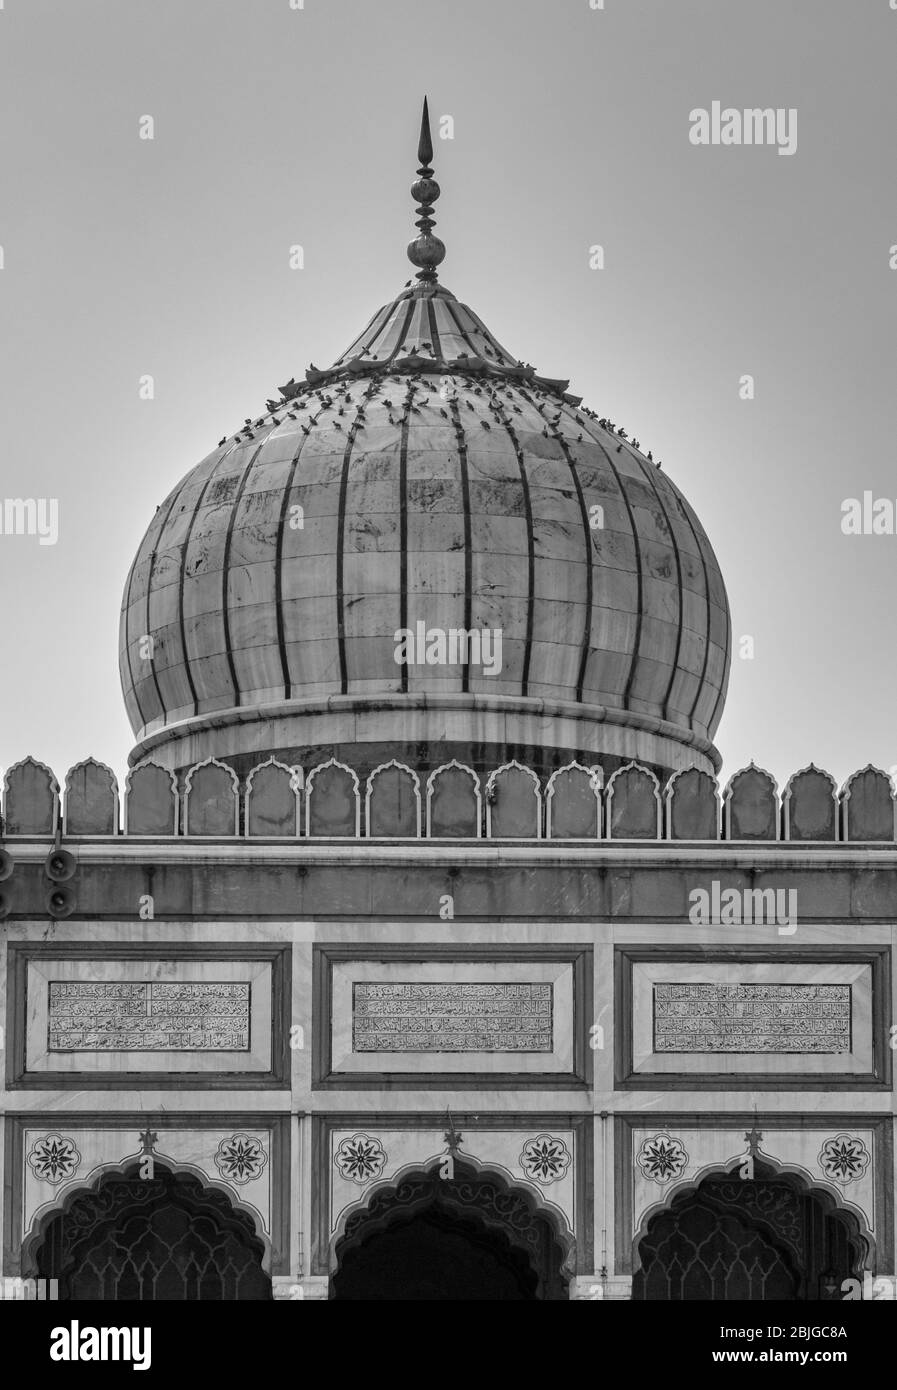 Masjid e Jahan Numa, Jama Masjid Moschee in Alt-Delhi, eine der größten Moscheen in Indien Stockfoto